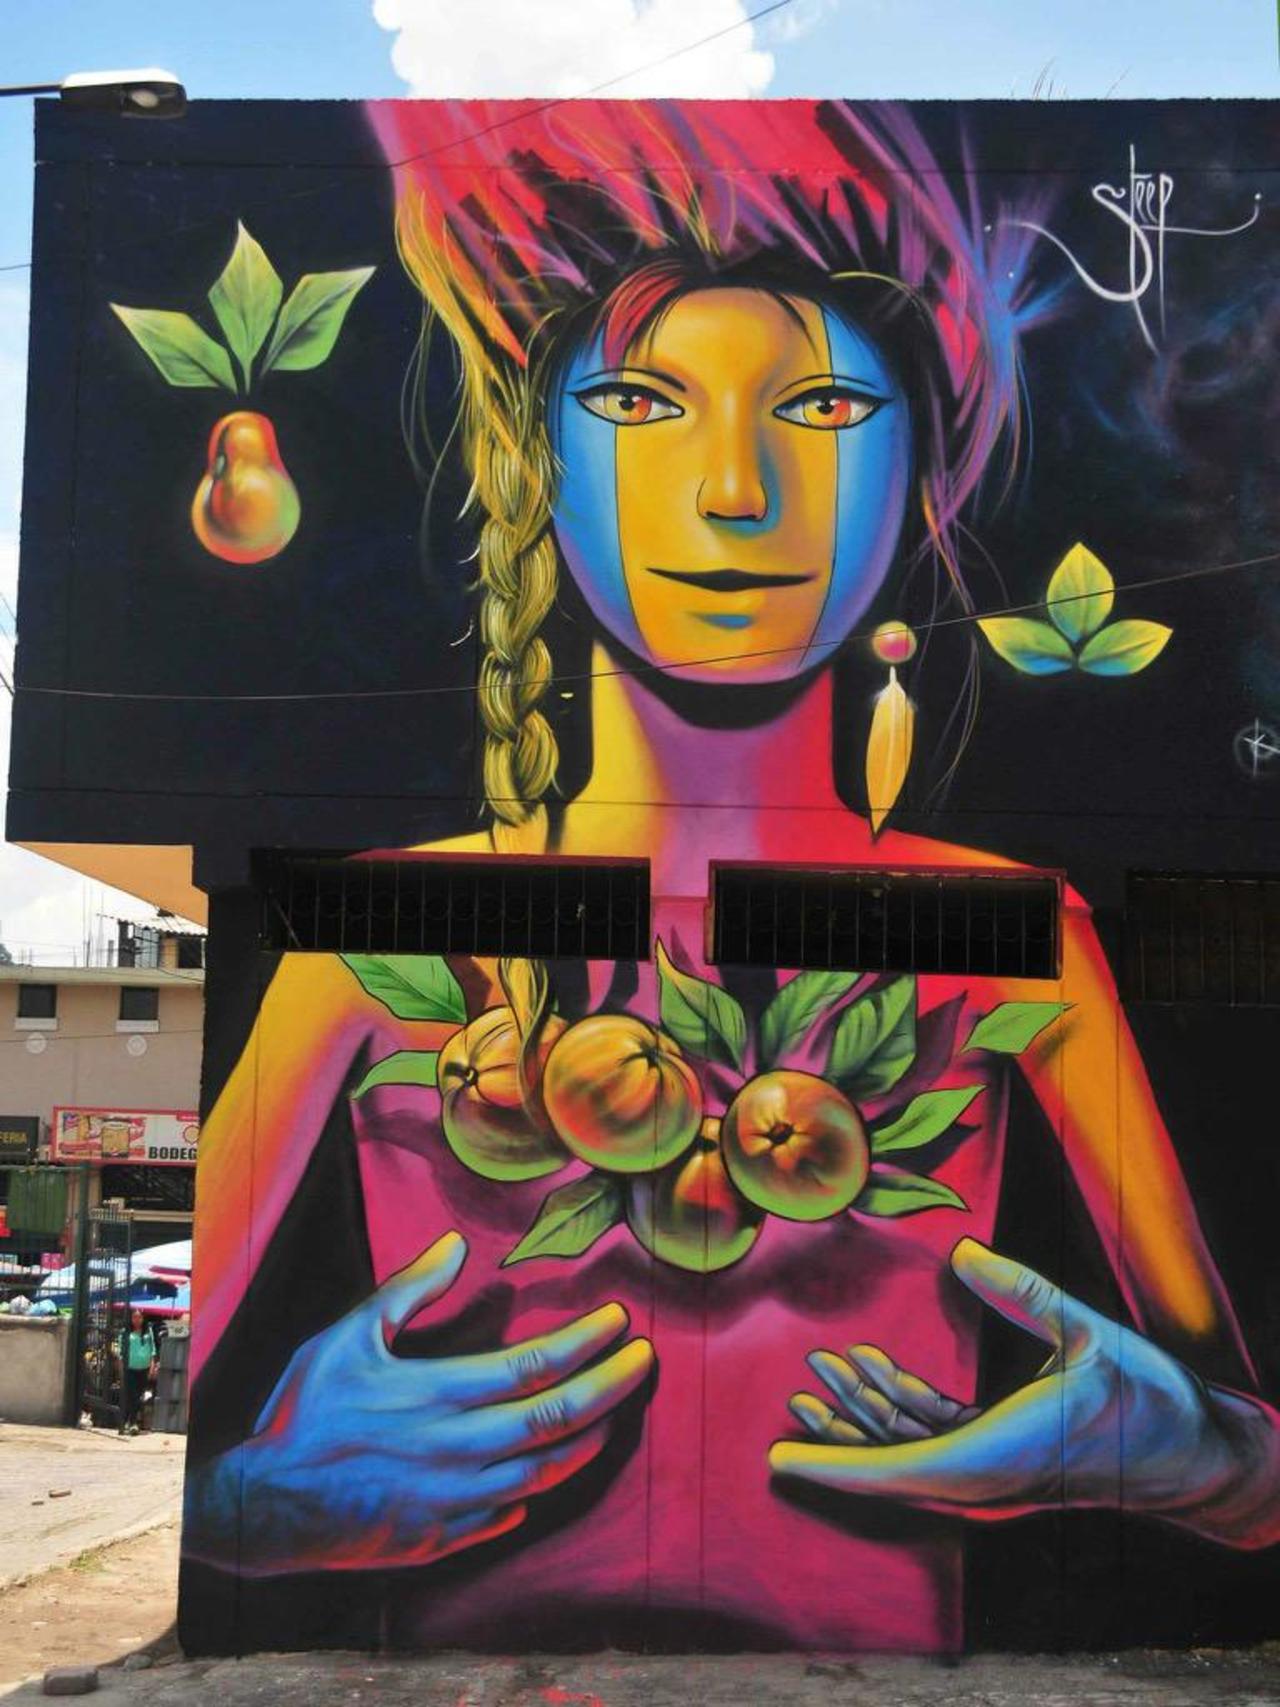 JewelNiles1: Street Art by Steep

#art #graffiti #mural #streetart http://t.co/ZWj2jpmLwc